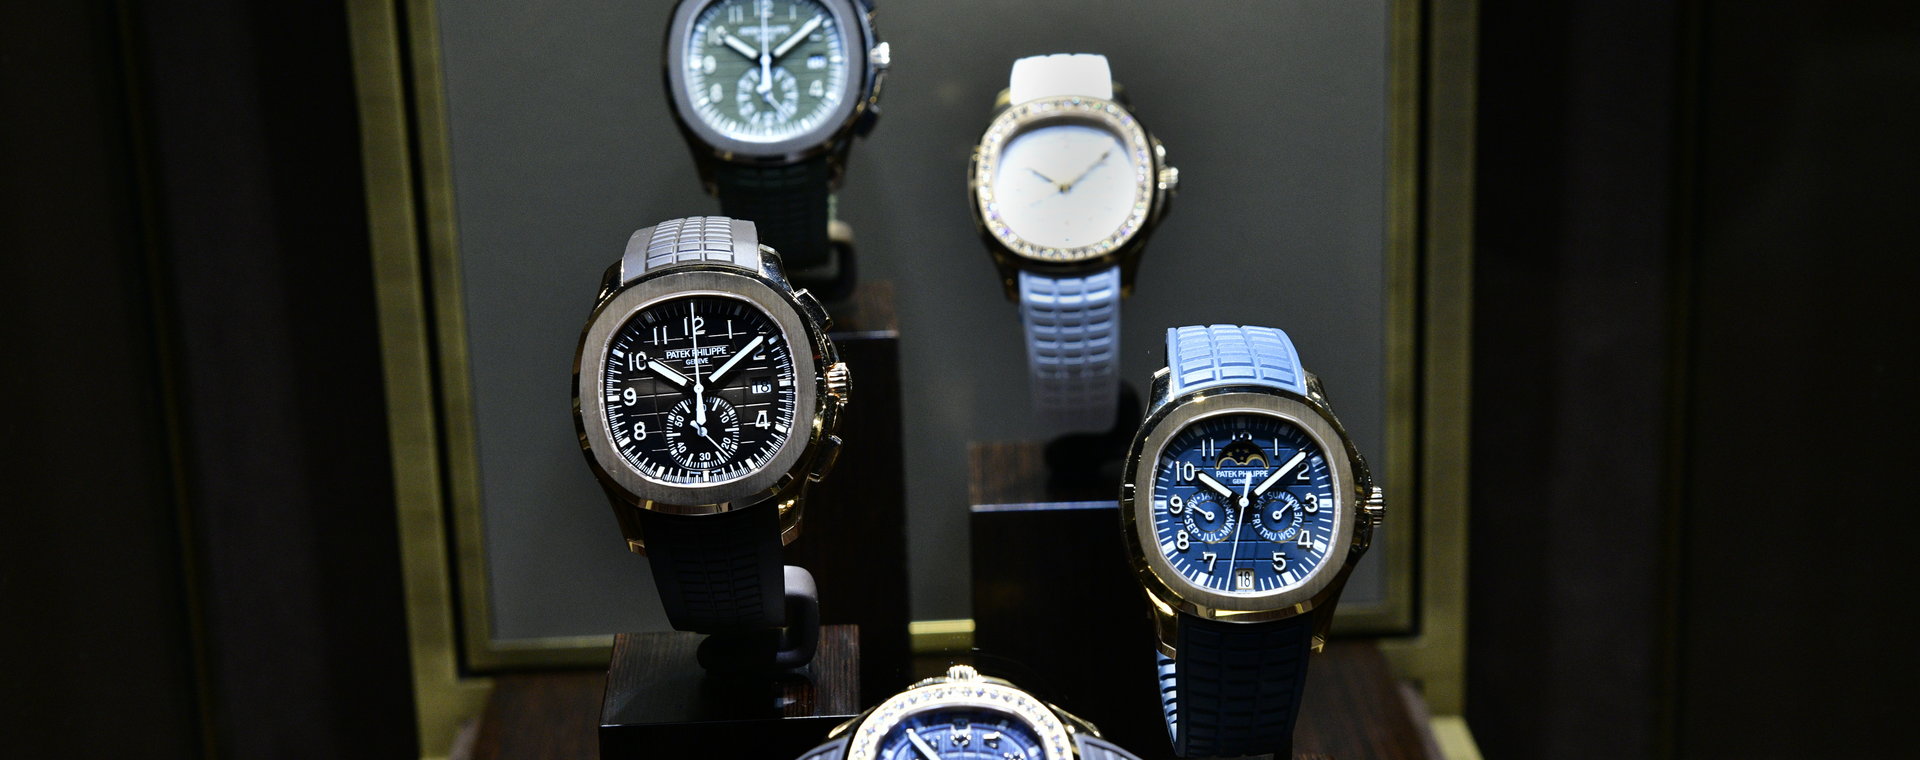 Luksusowe zegarki są wyjątkowo pożądane, więc ich zakup "z ulicy" do łatwych nie należy.